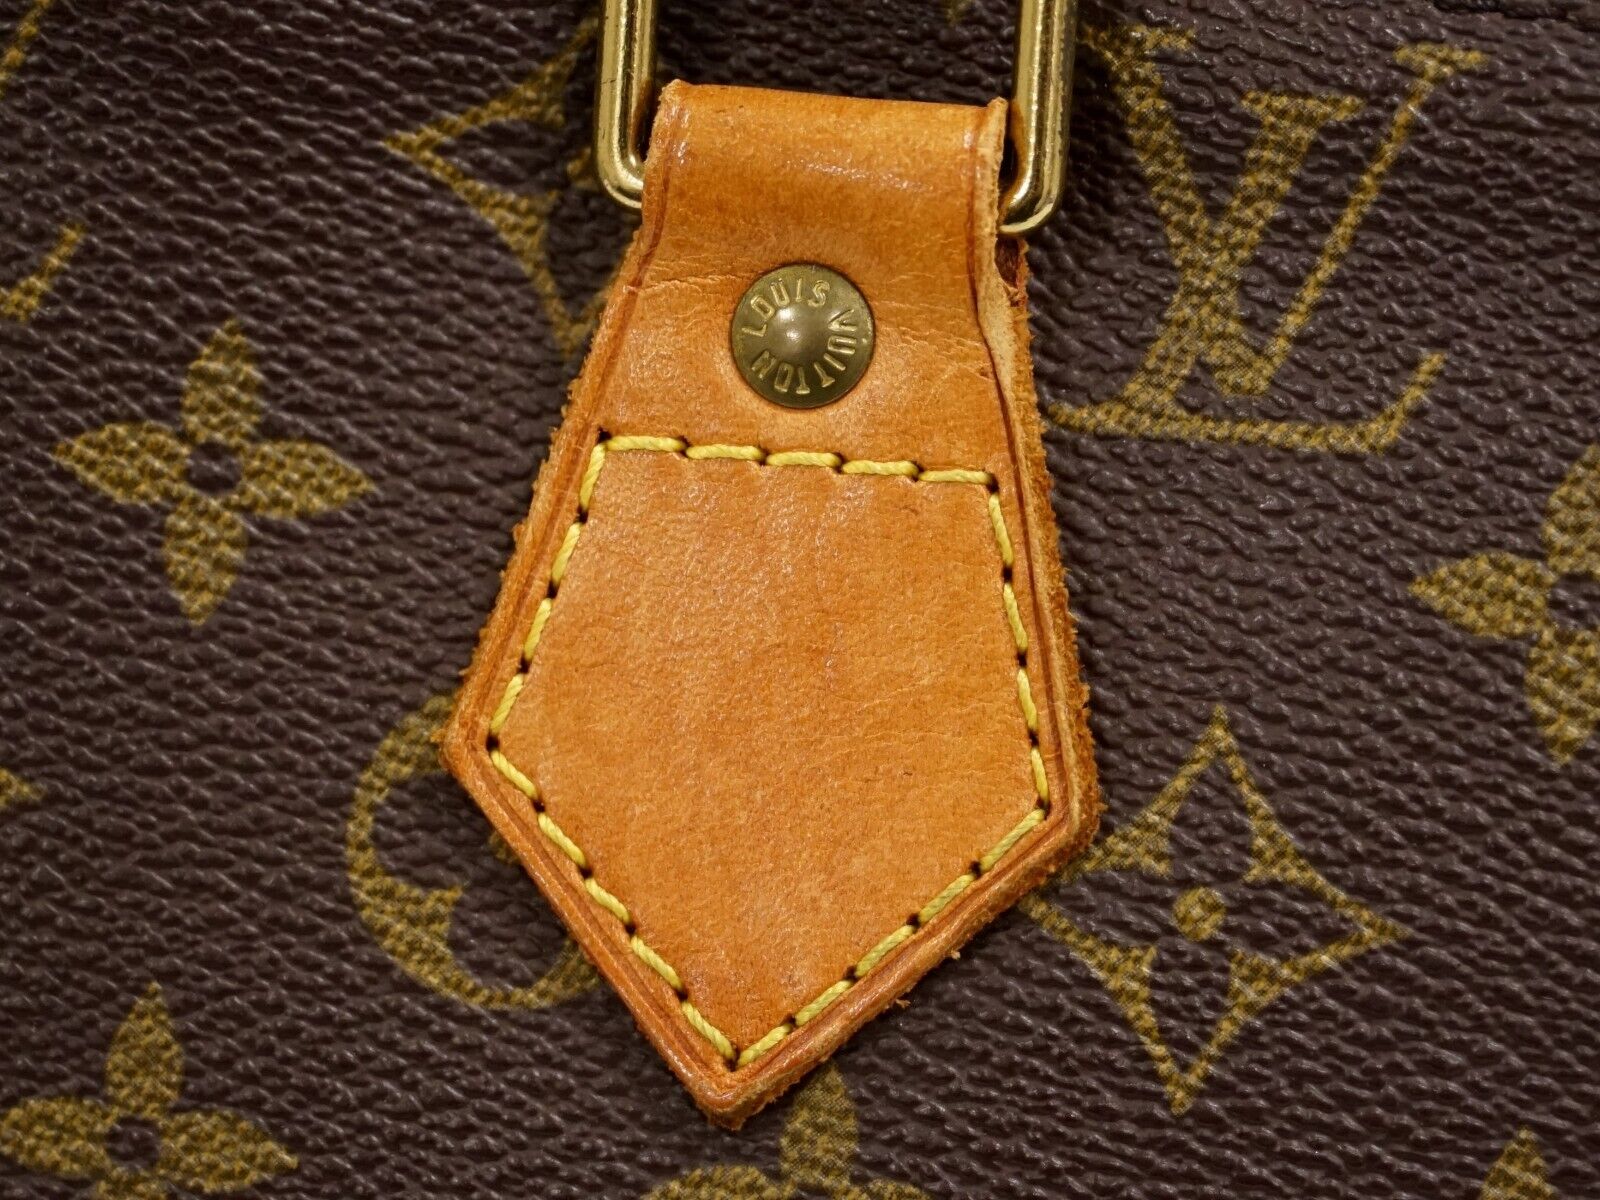 Louis Vuitton Alma Handbag 355614